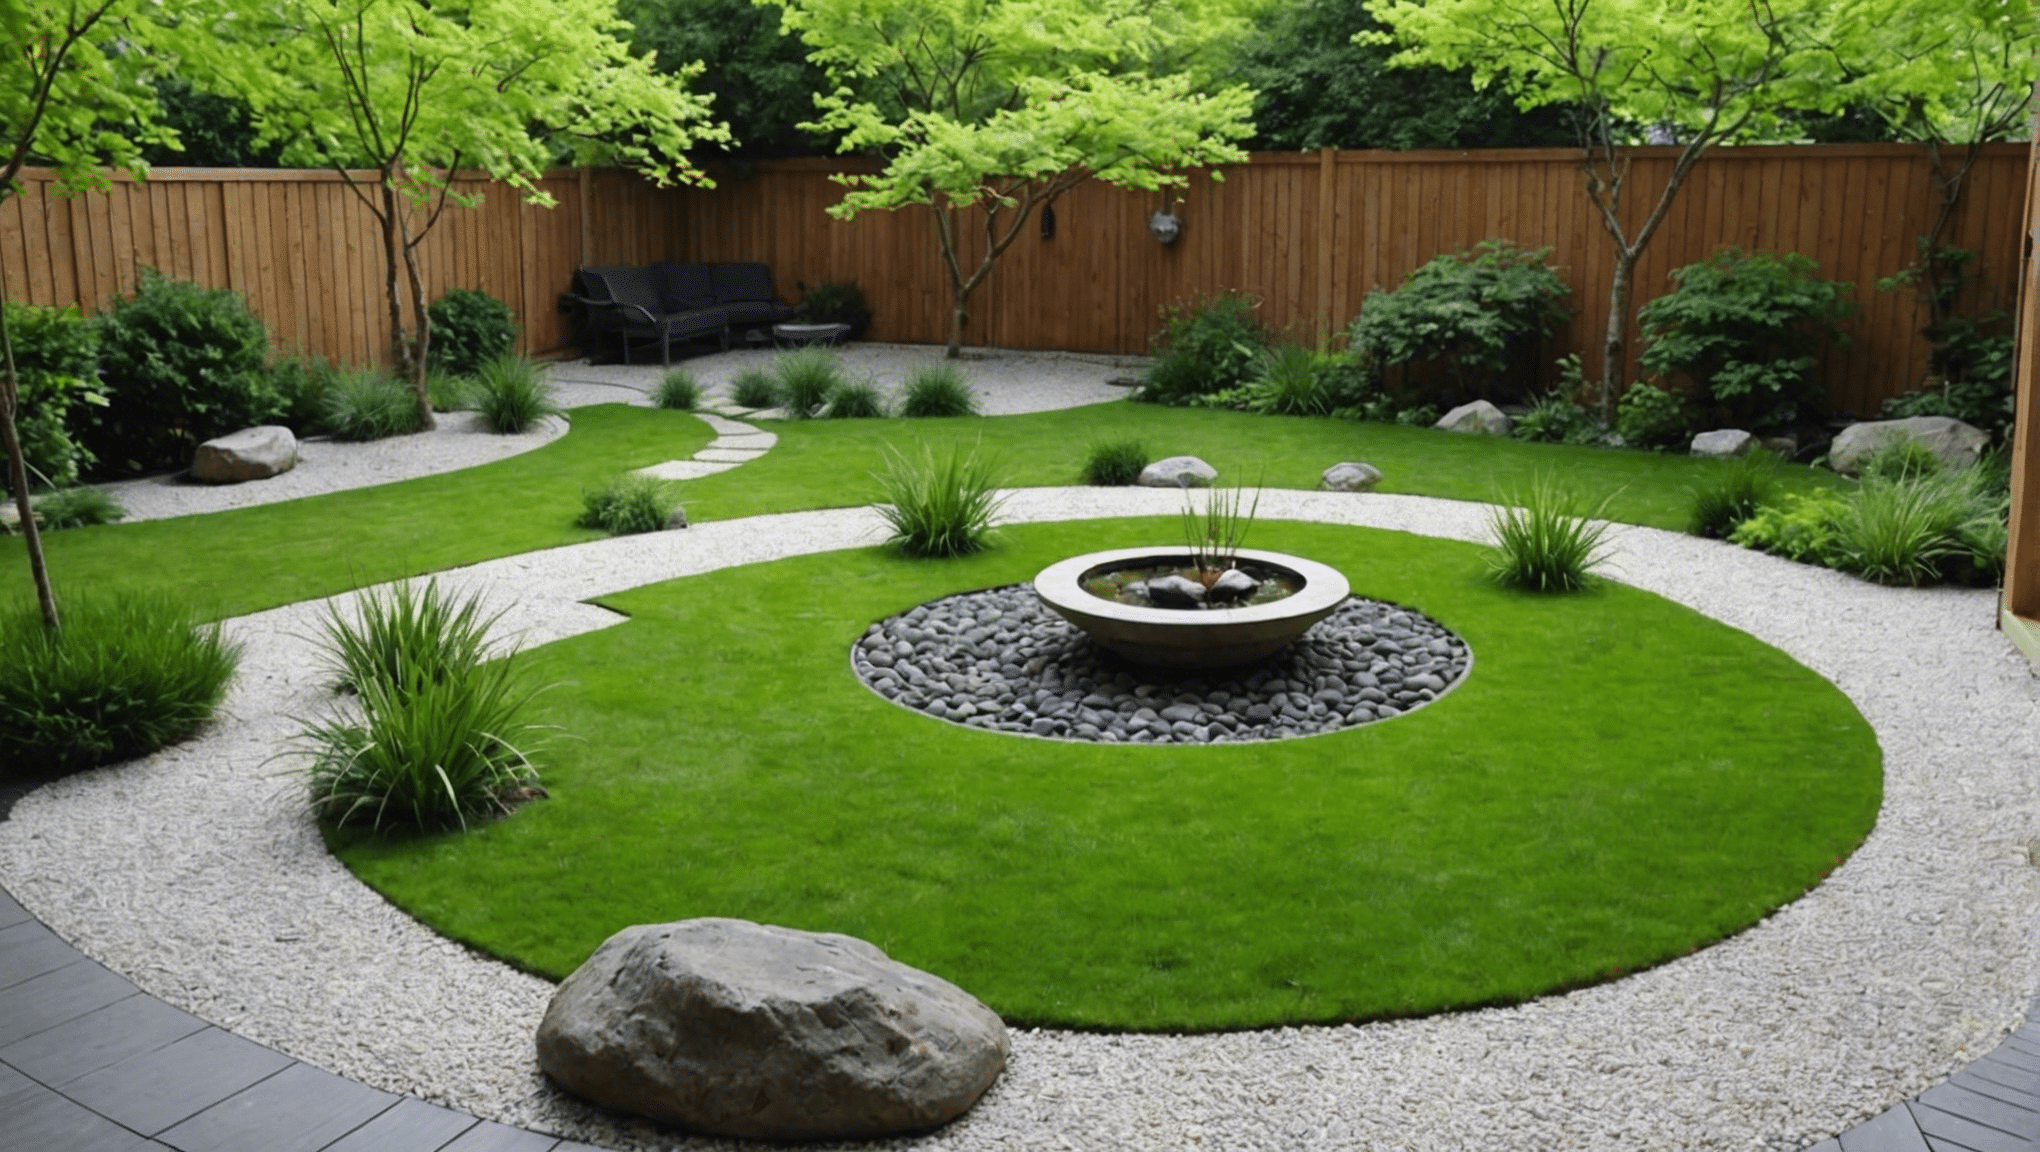 découvrez comment aménager un jardin zen chez vous pour créer un espace de tranquillité et de sérénité, en harmonie avec la nature et propice à la méditation.